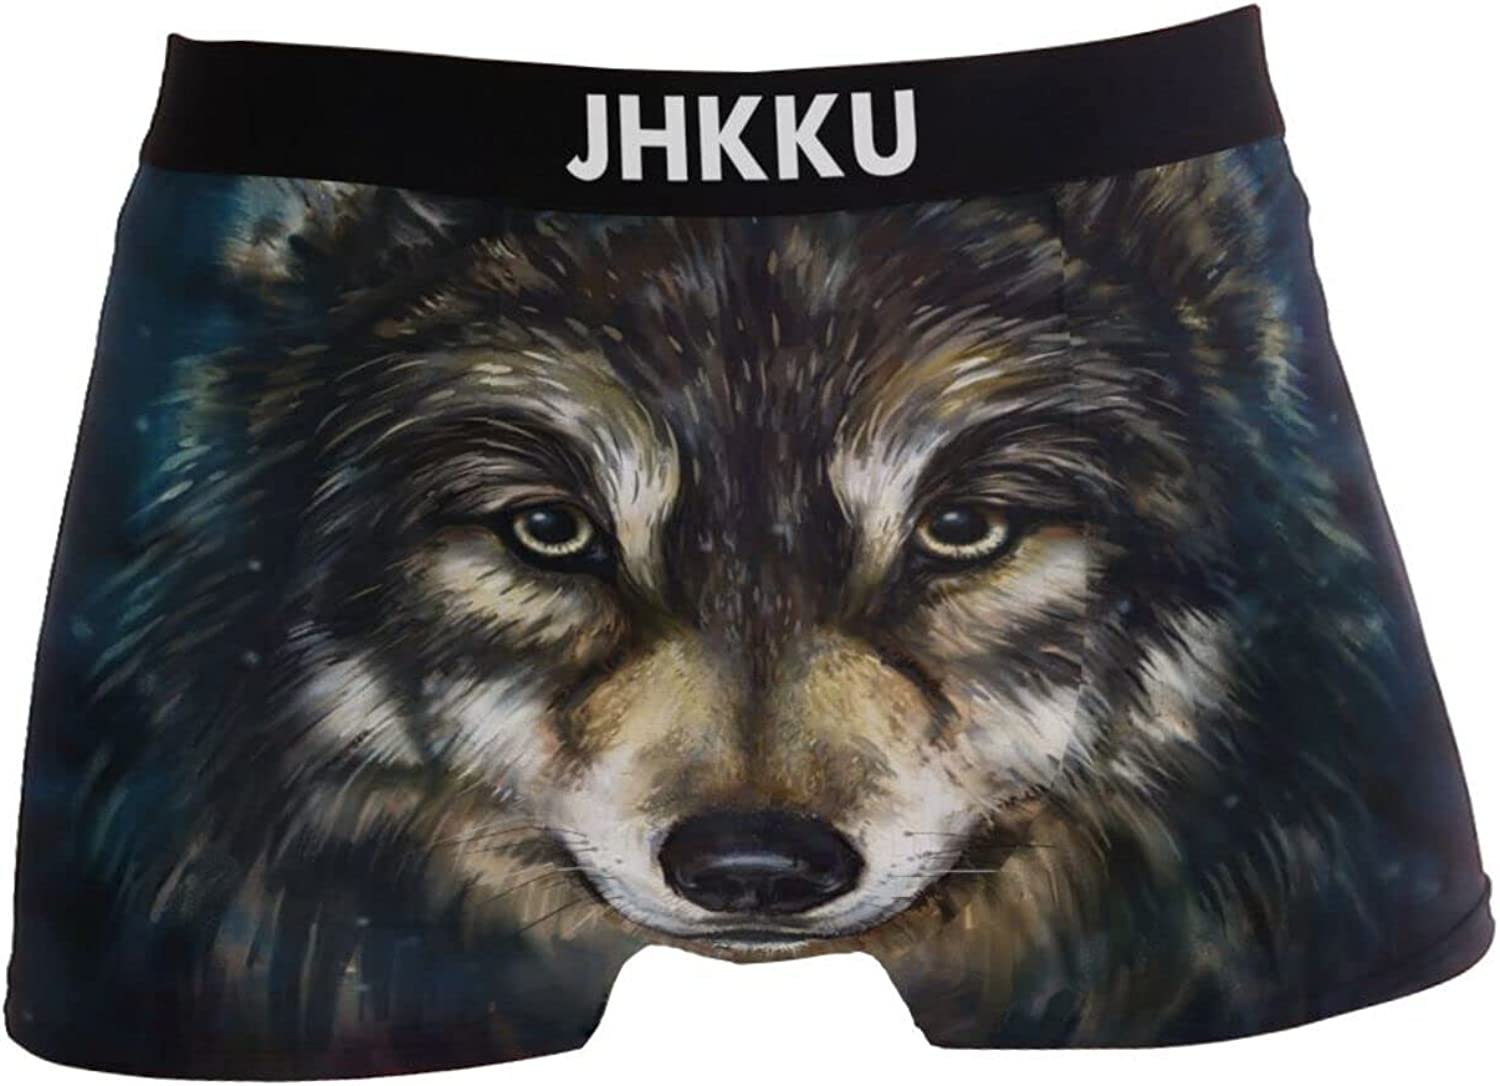 JHKKU Men's Underwear Fashion Stretch Soft Boxer Briefs Comfort Breathable